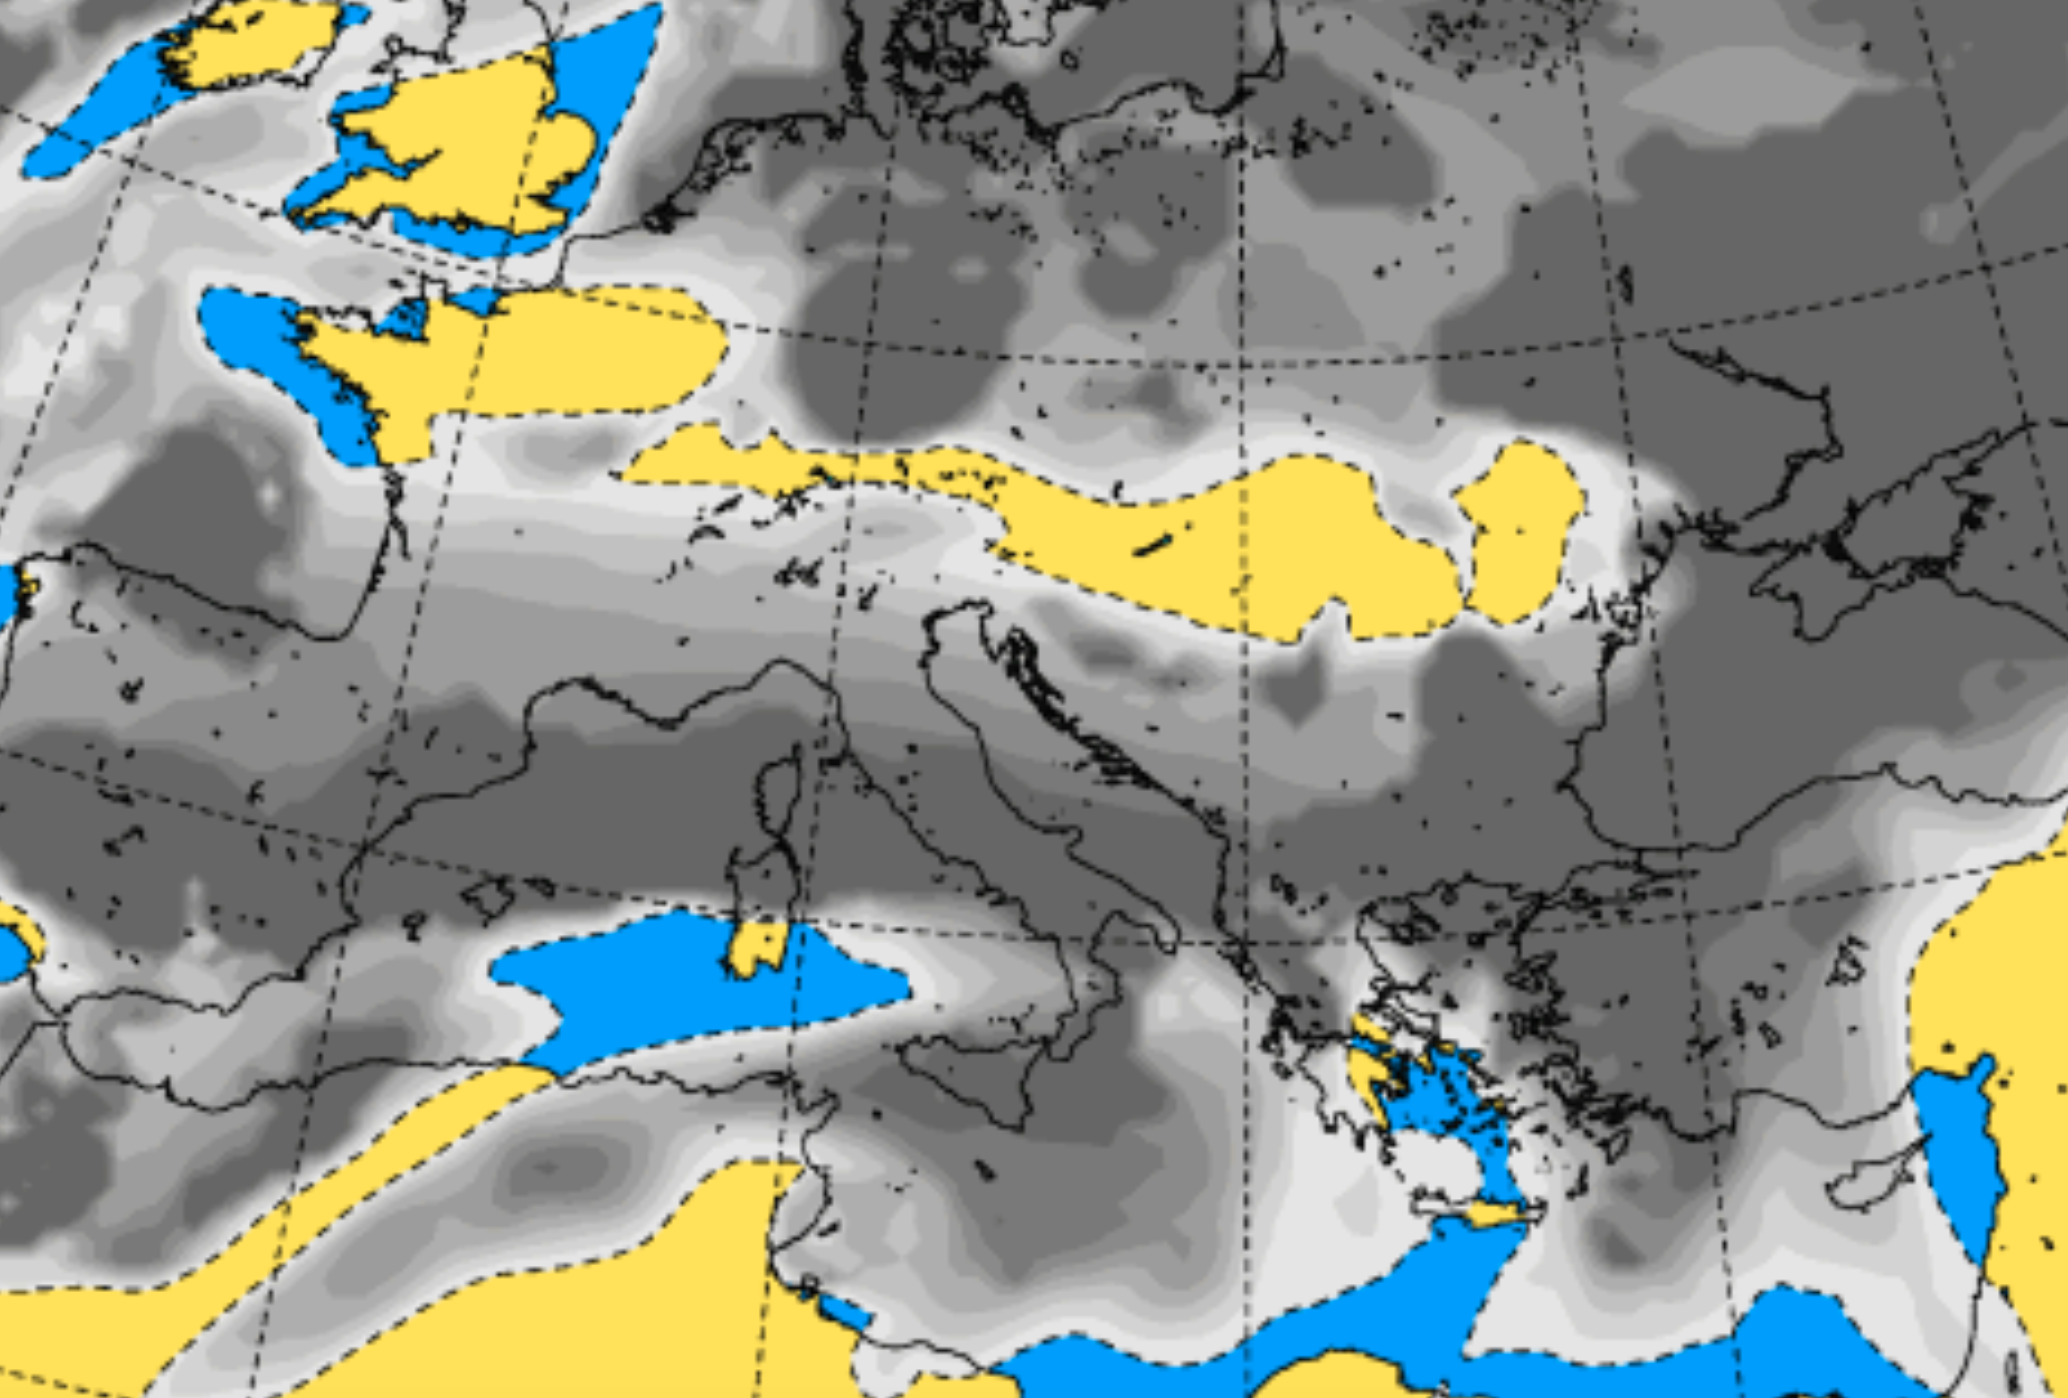 Previsioni in Sicilia: perturbazioni atlantiche peggiorano le condizioni meteo, in arrivo piogge e venti forti